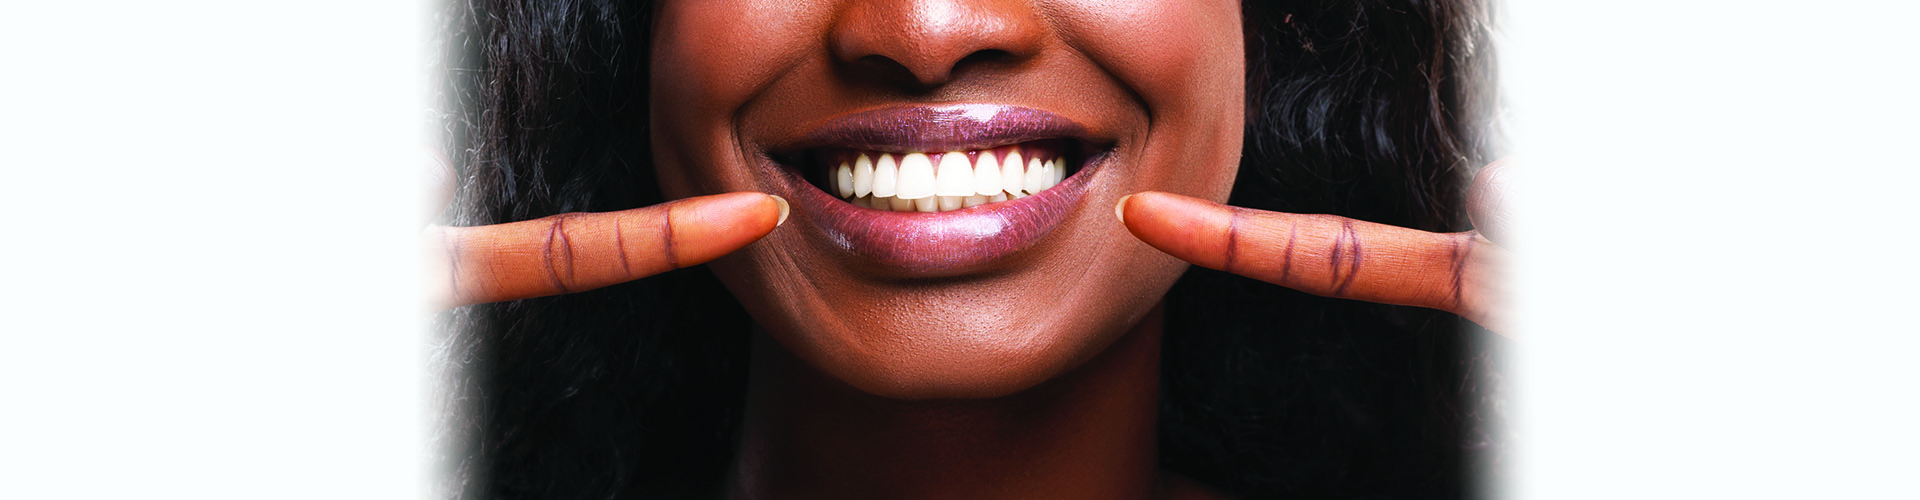 Teeth Whitening Procedure Kelowna